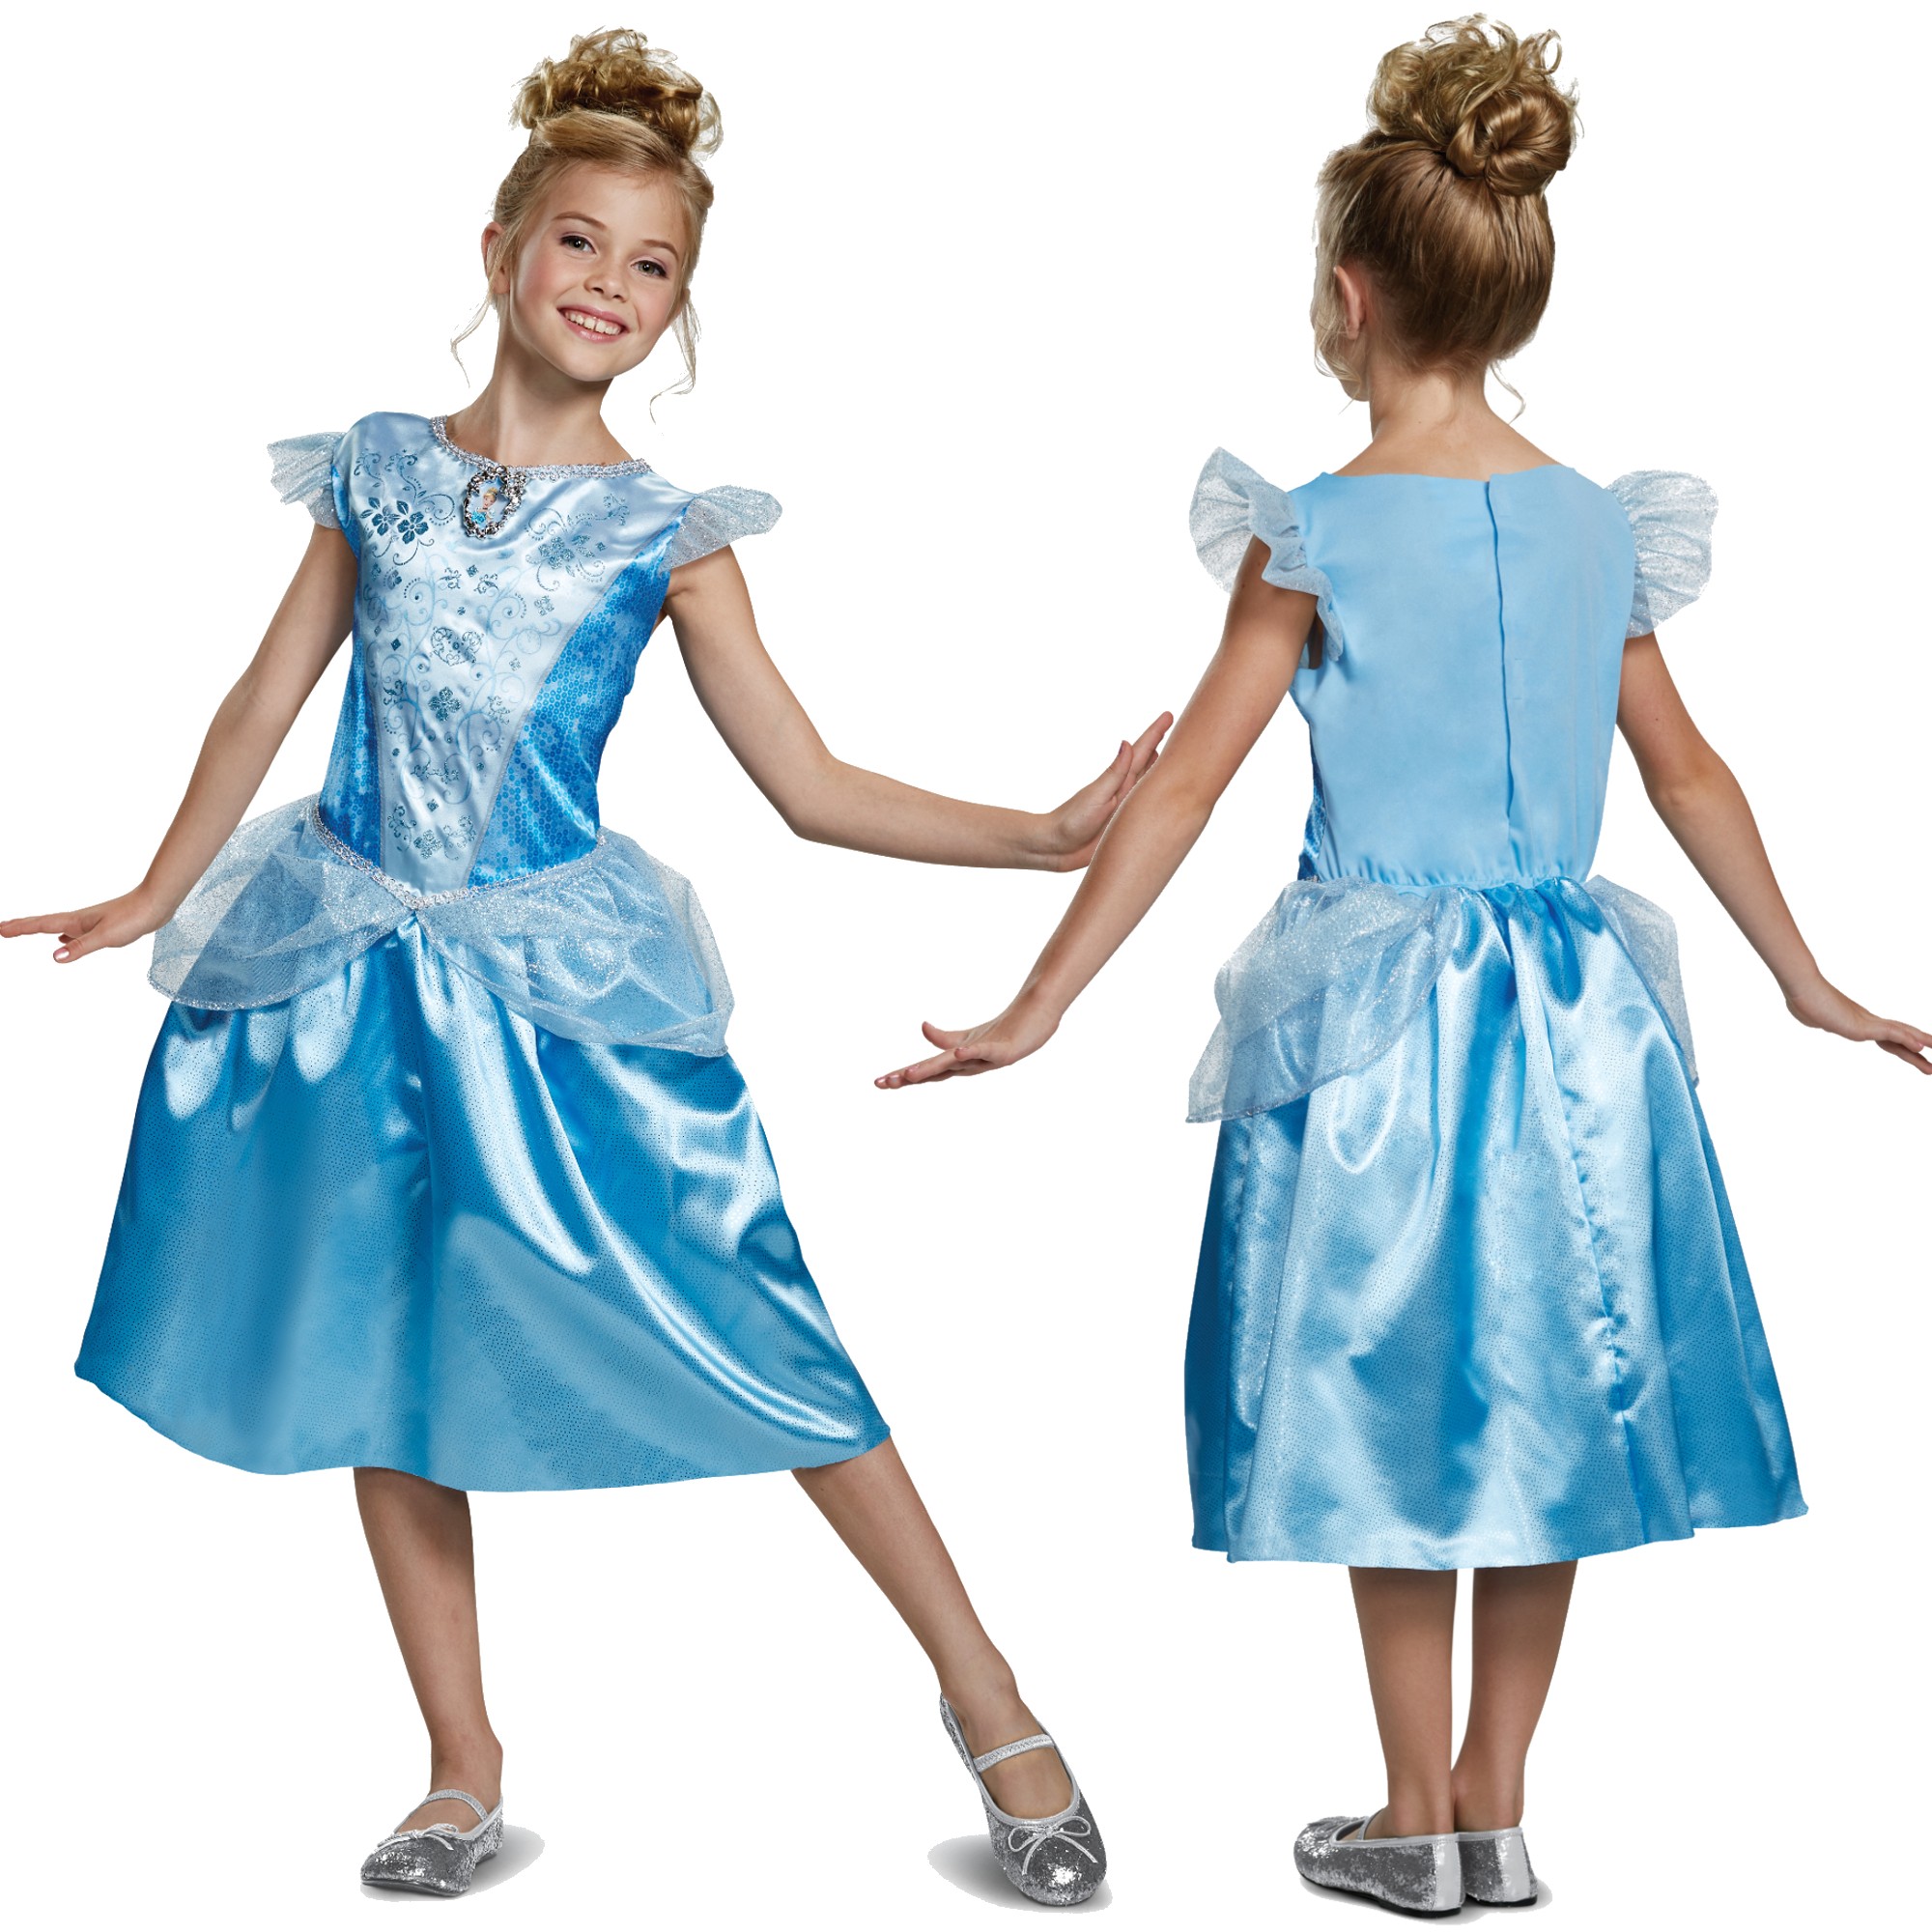 Strj karnawaowy Disney dla dziewczynki Kopciuszek kostium przebranie 125-135 cm (7-8 lat)